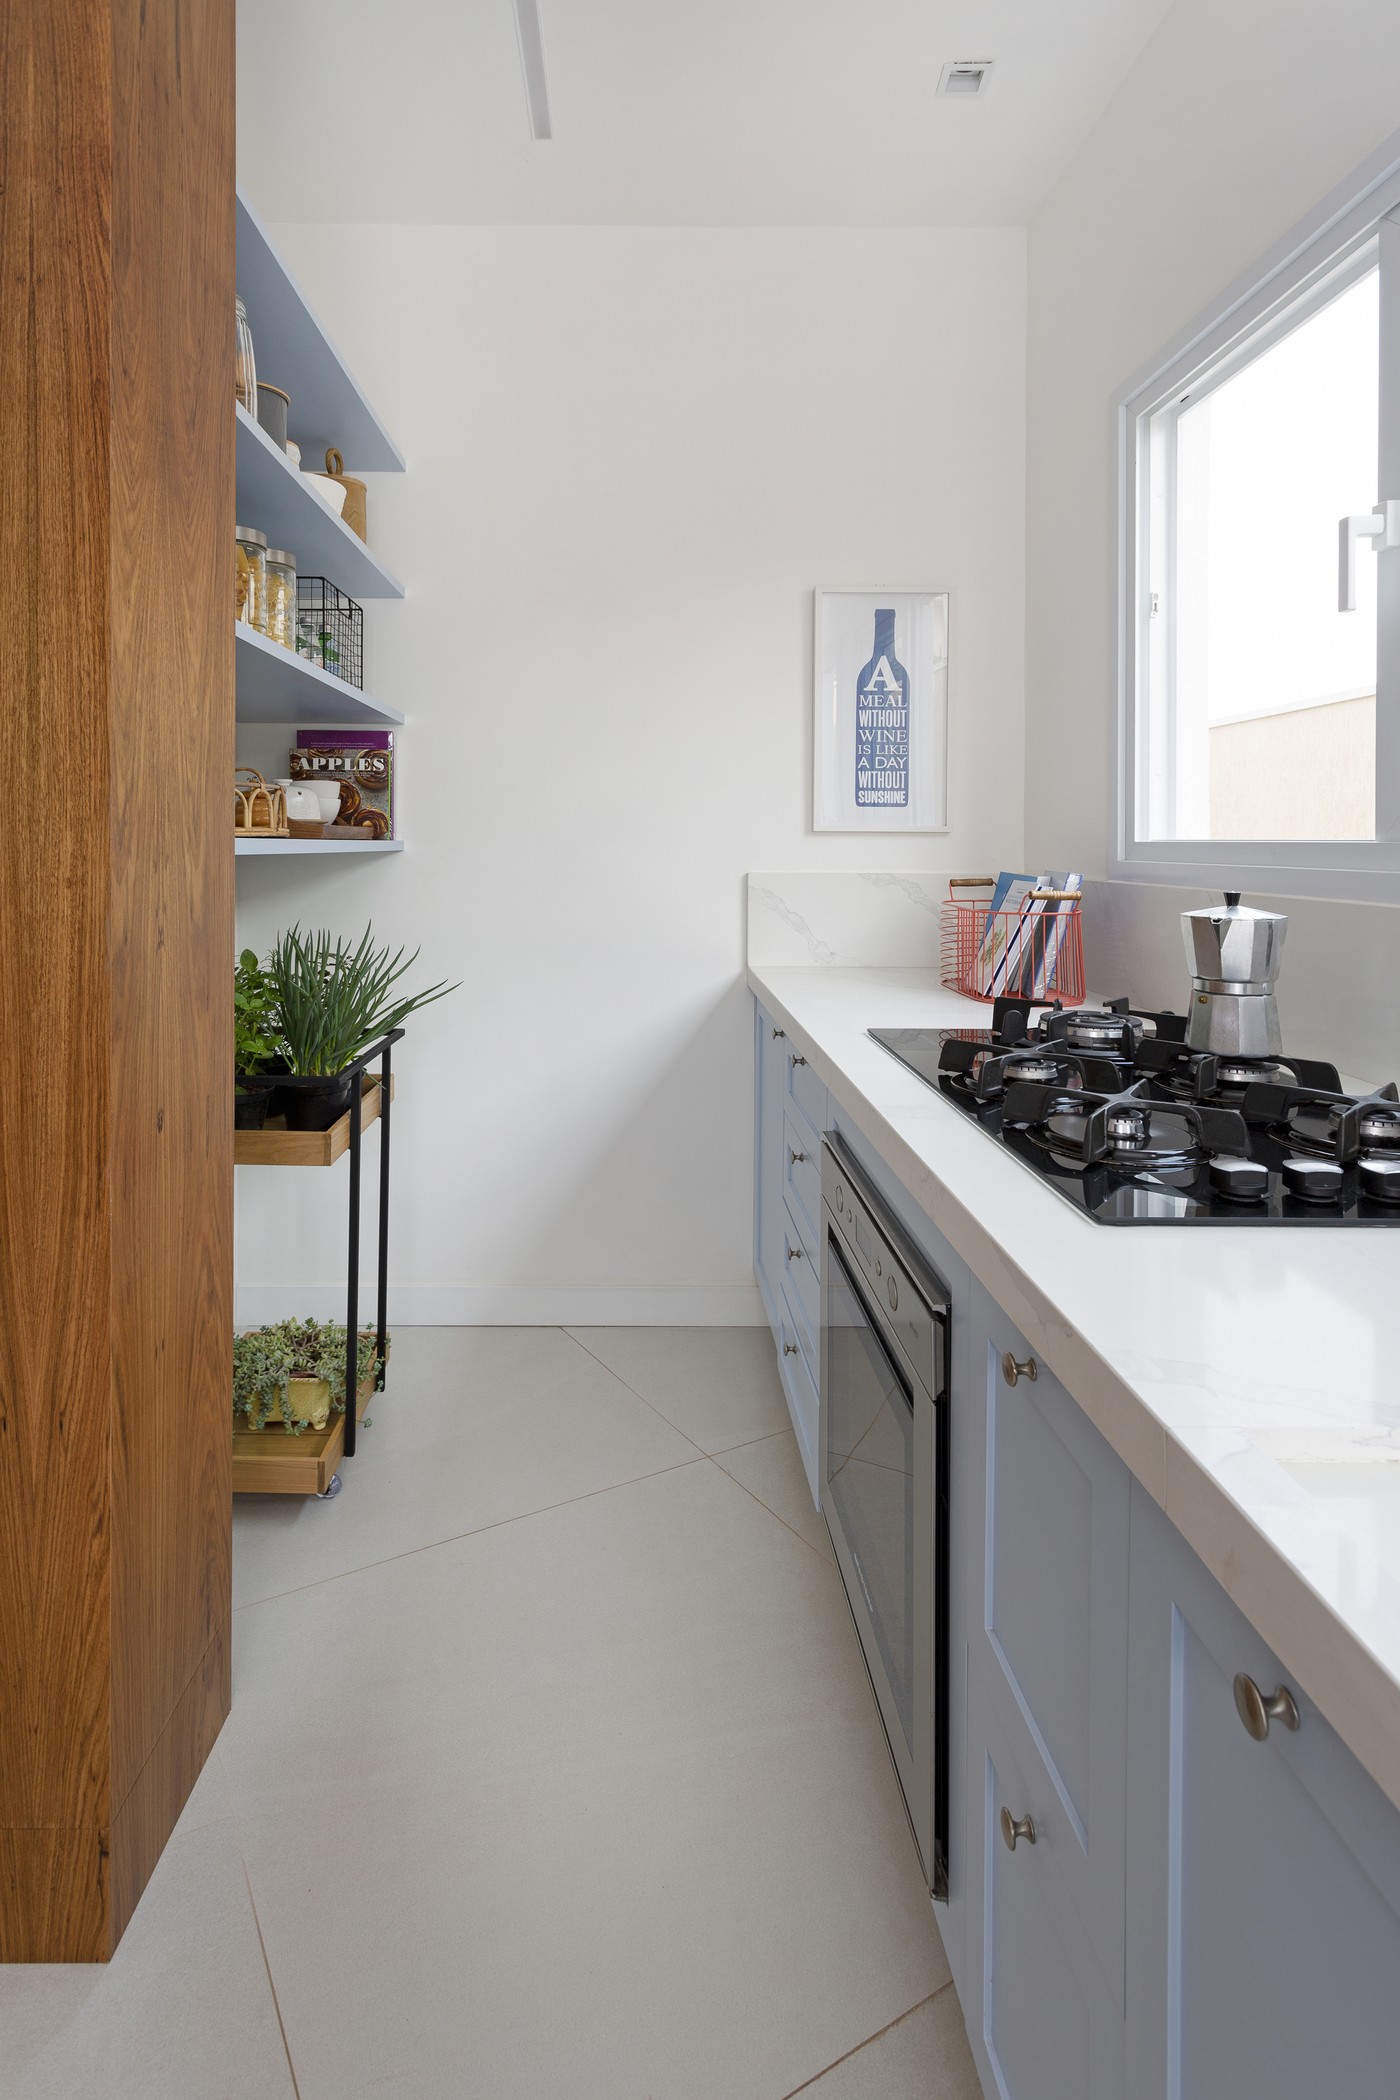 Décor do dia: cozinha aberta tem armários azuis, ilha central e parede de tijolinhos (Foto: Julia Ribeiro)